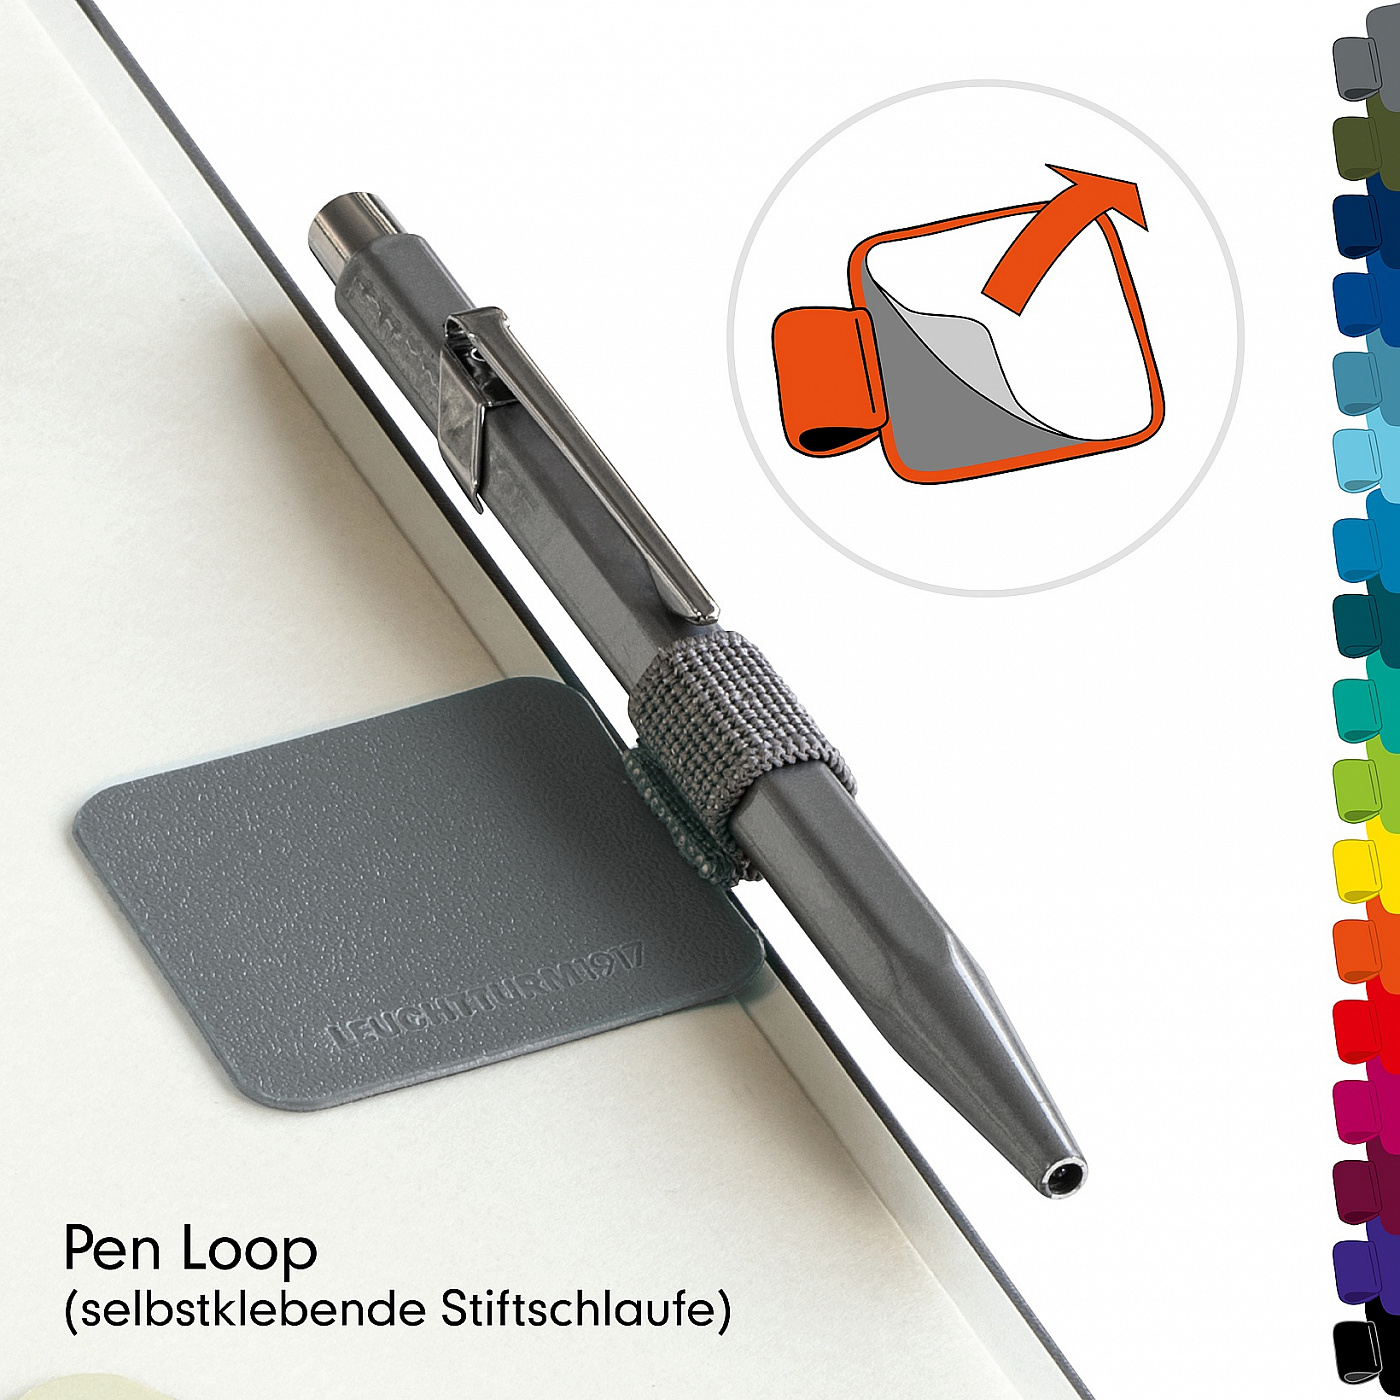 Петля самоклеящаяся Pen Loop XL для ручек Leuchtturm цвет Lecht-366148;Lecht-366145;Lecht-366146 - фото 3